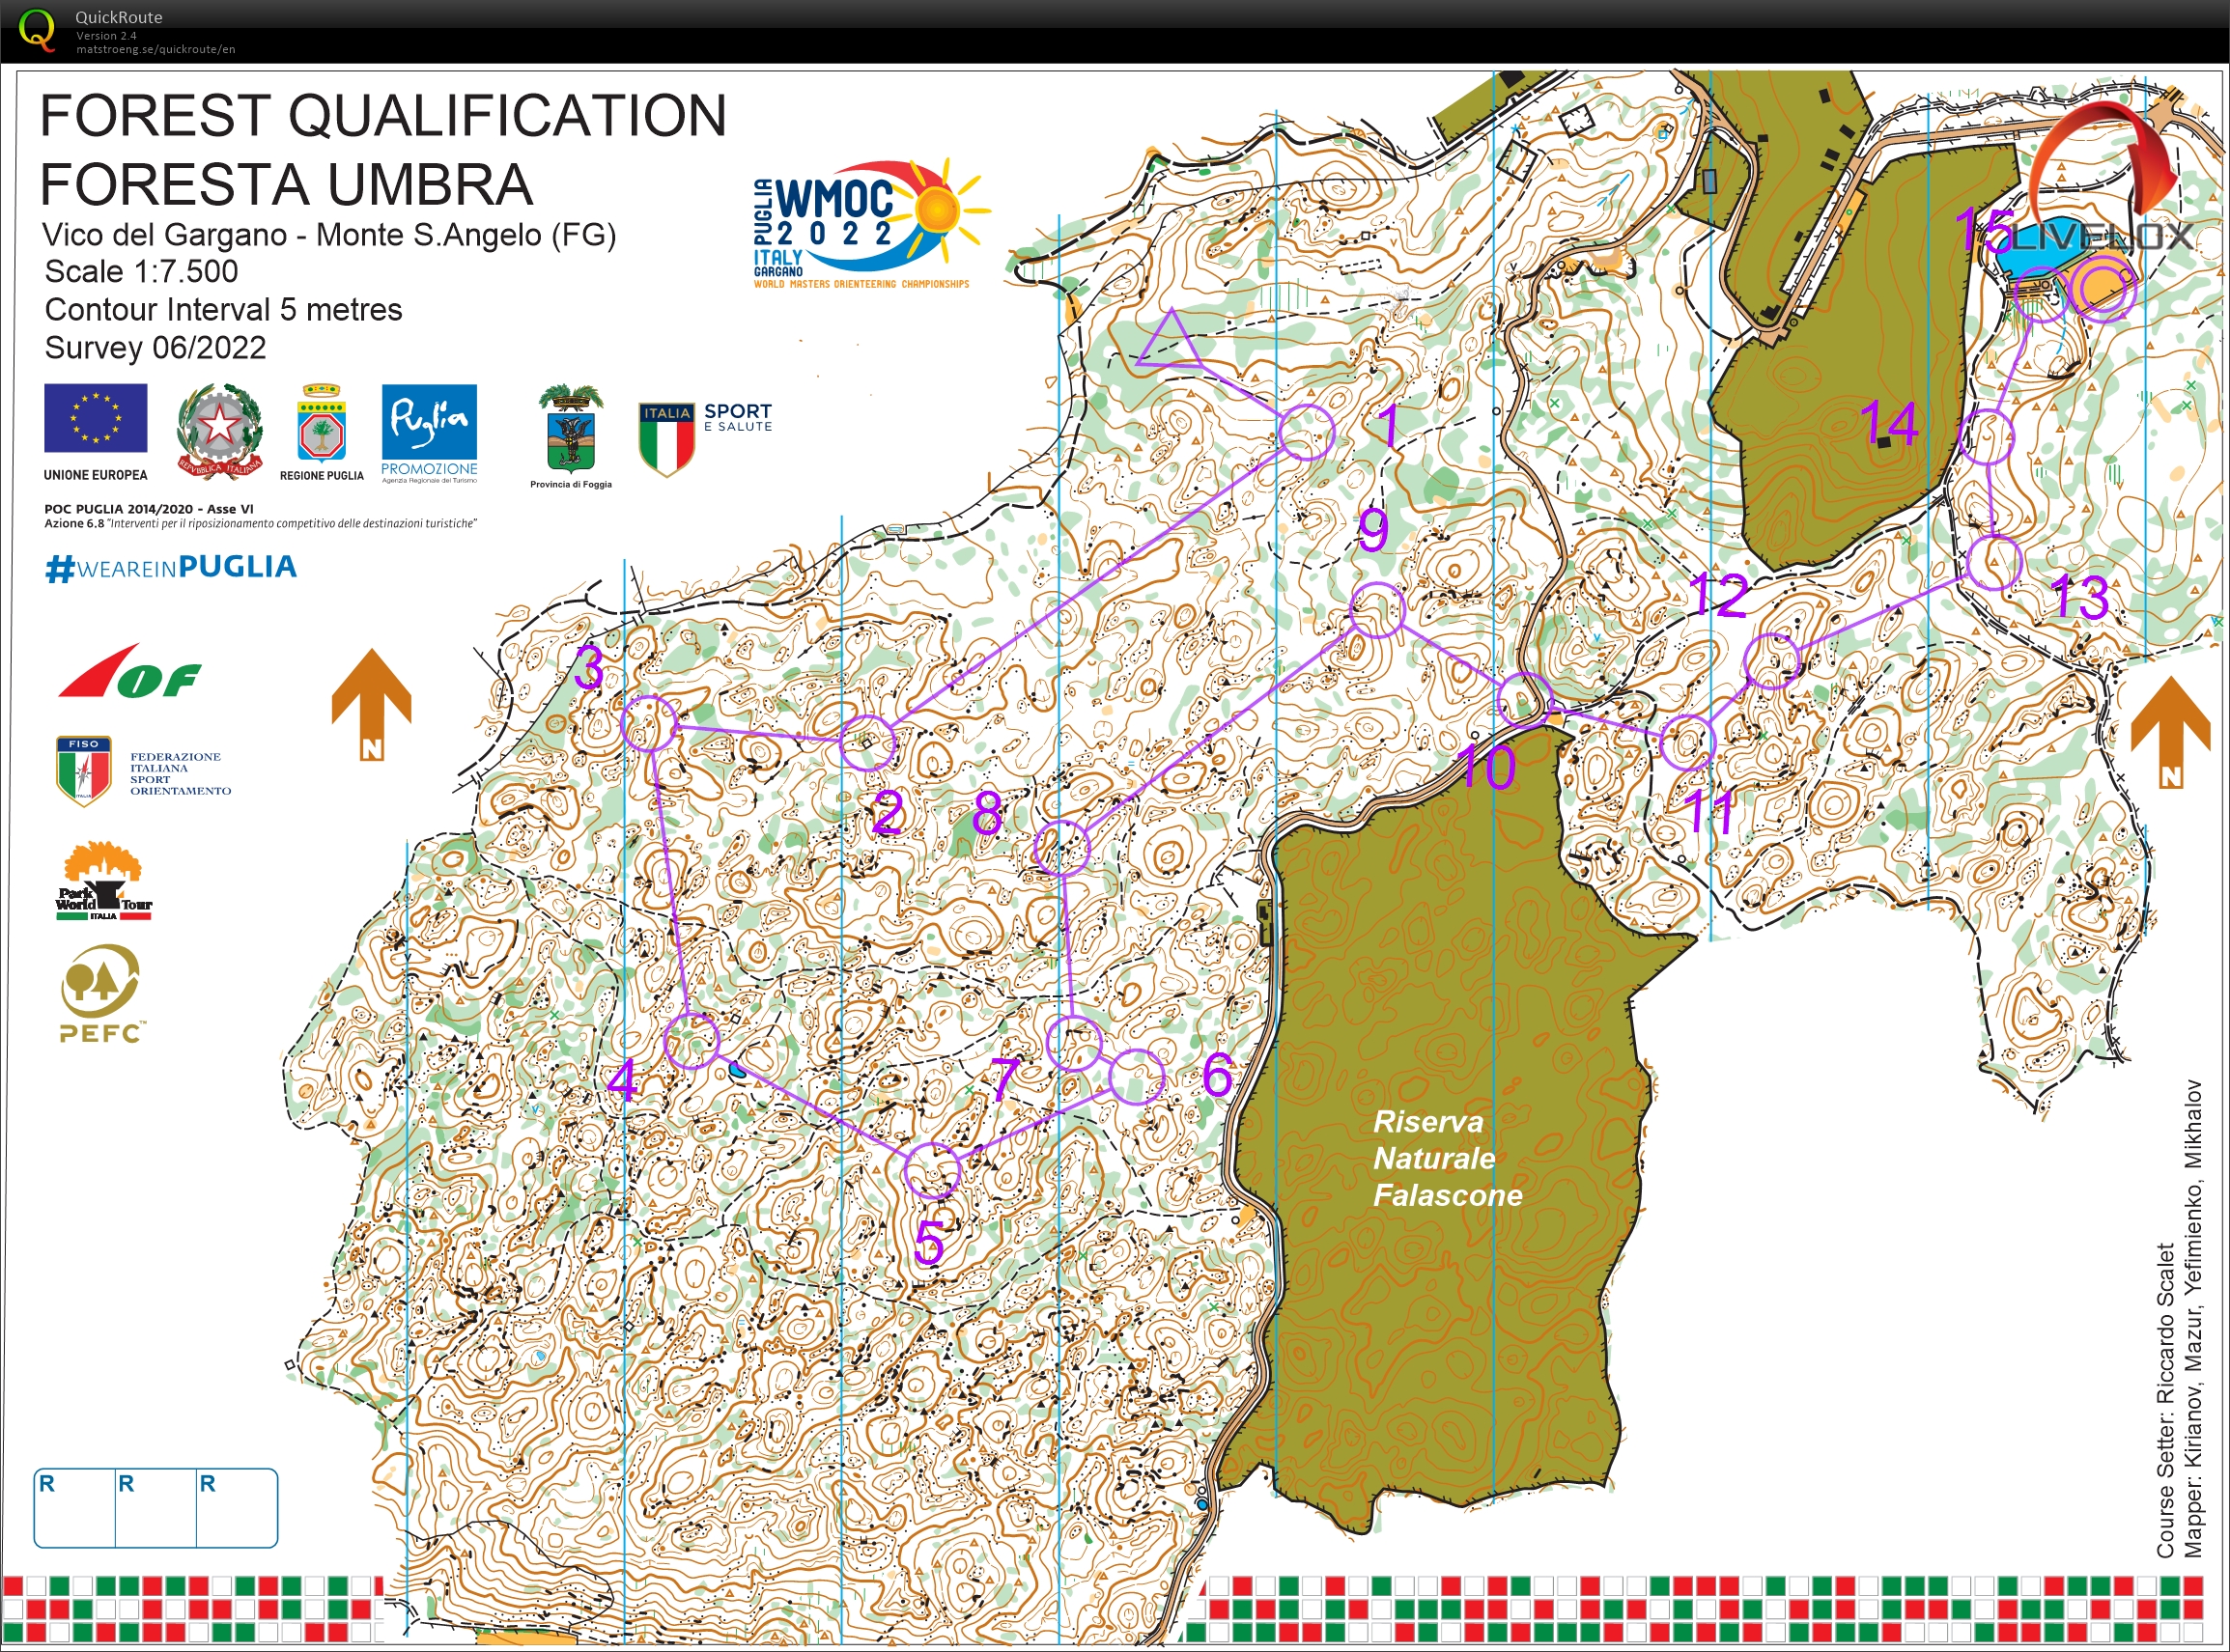 WMOC, Foresta Umbra, Italia, Skogskvaifisering, M60-3 (2022-07-13)